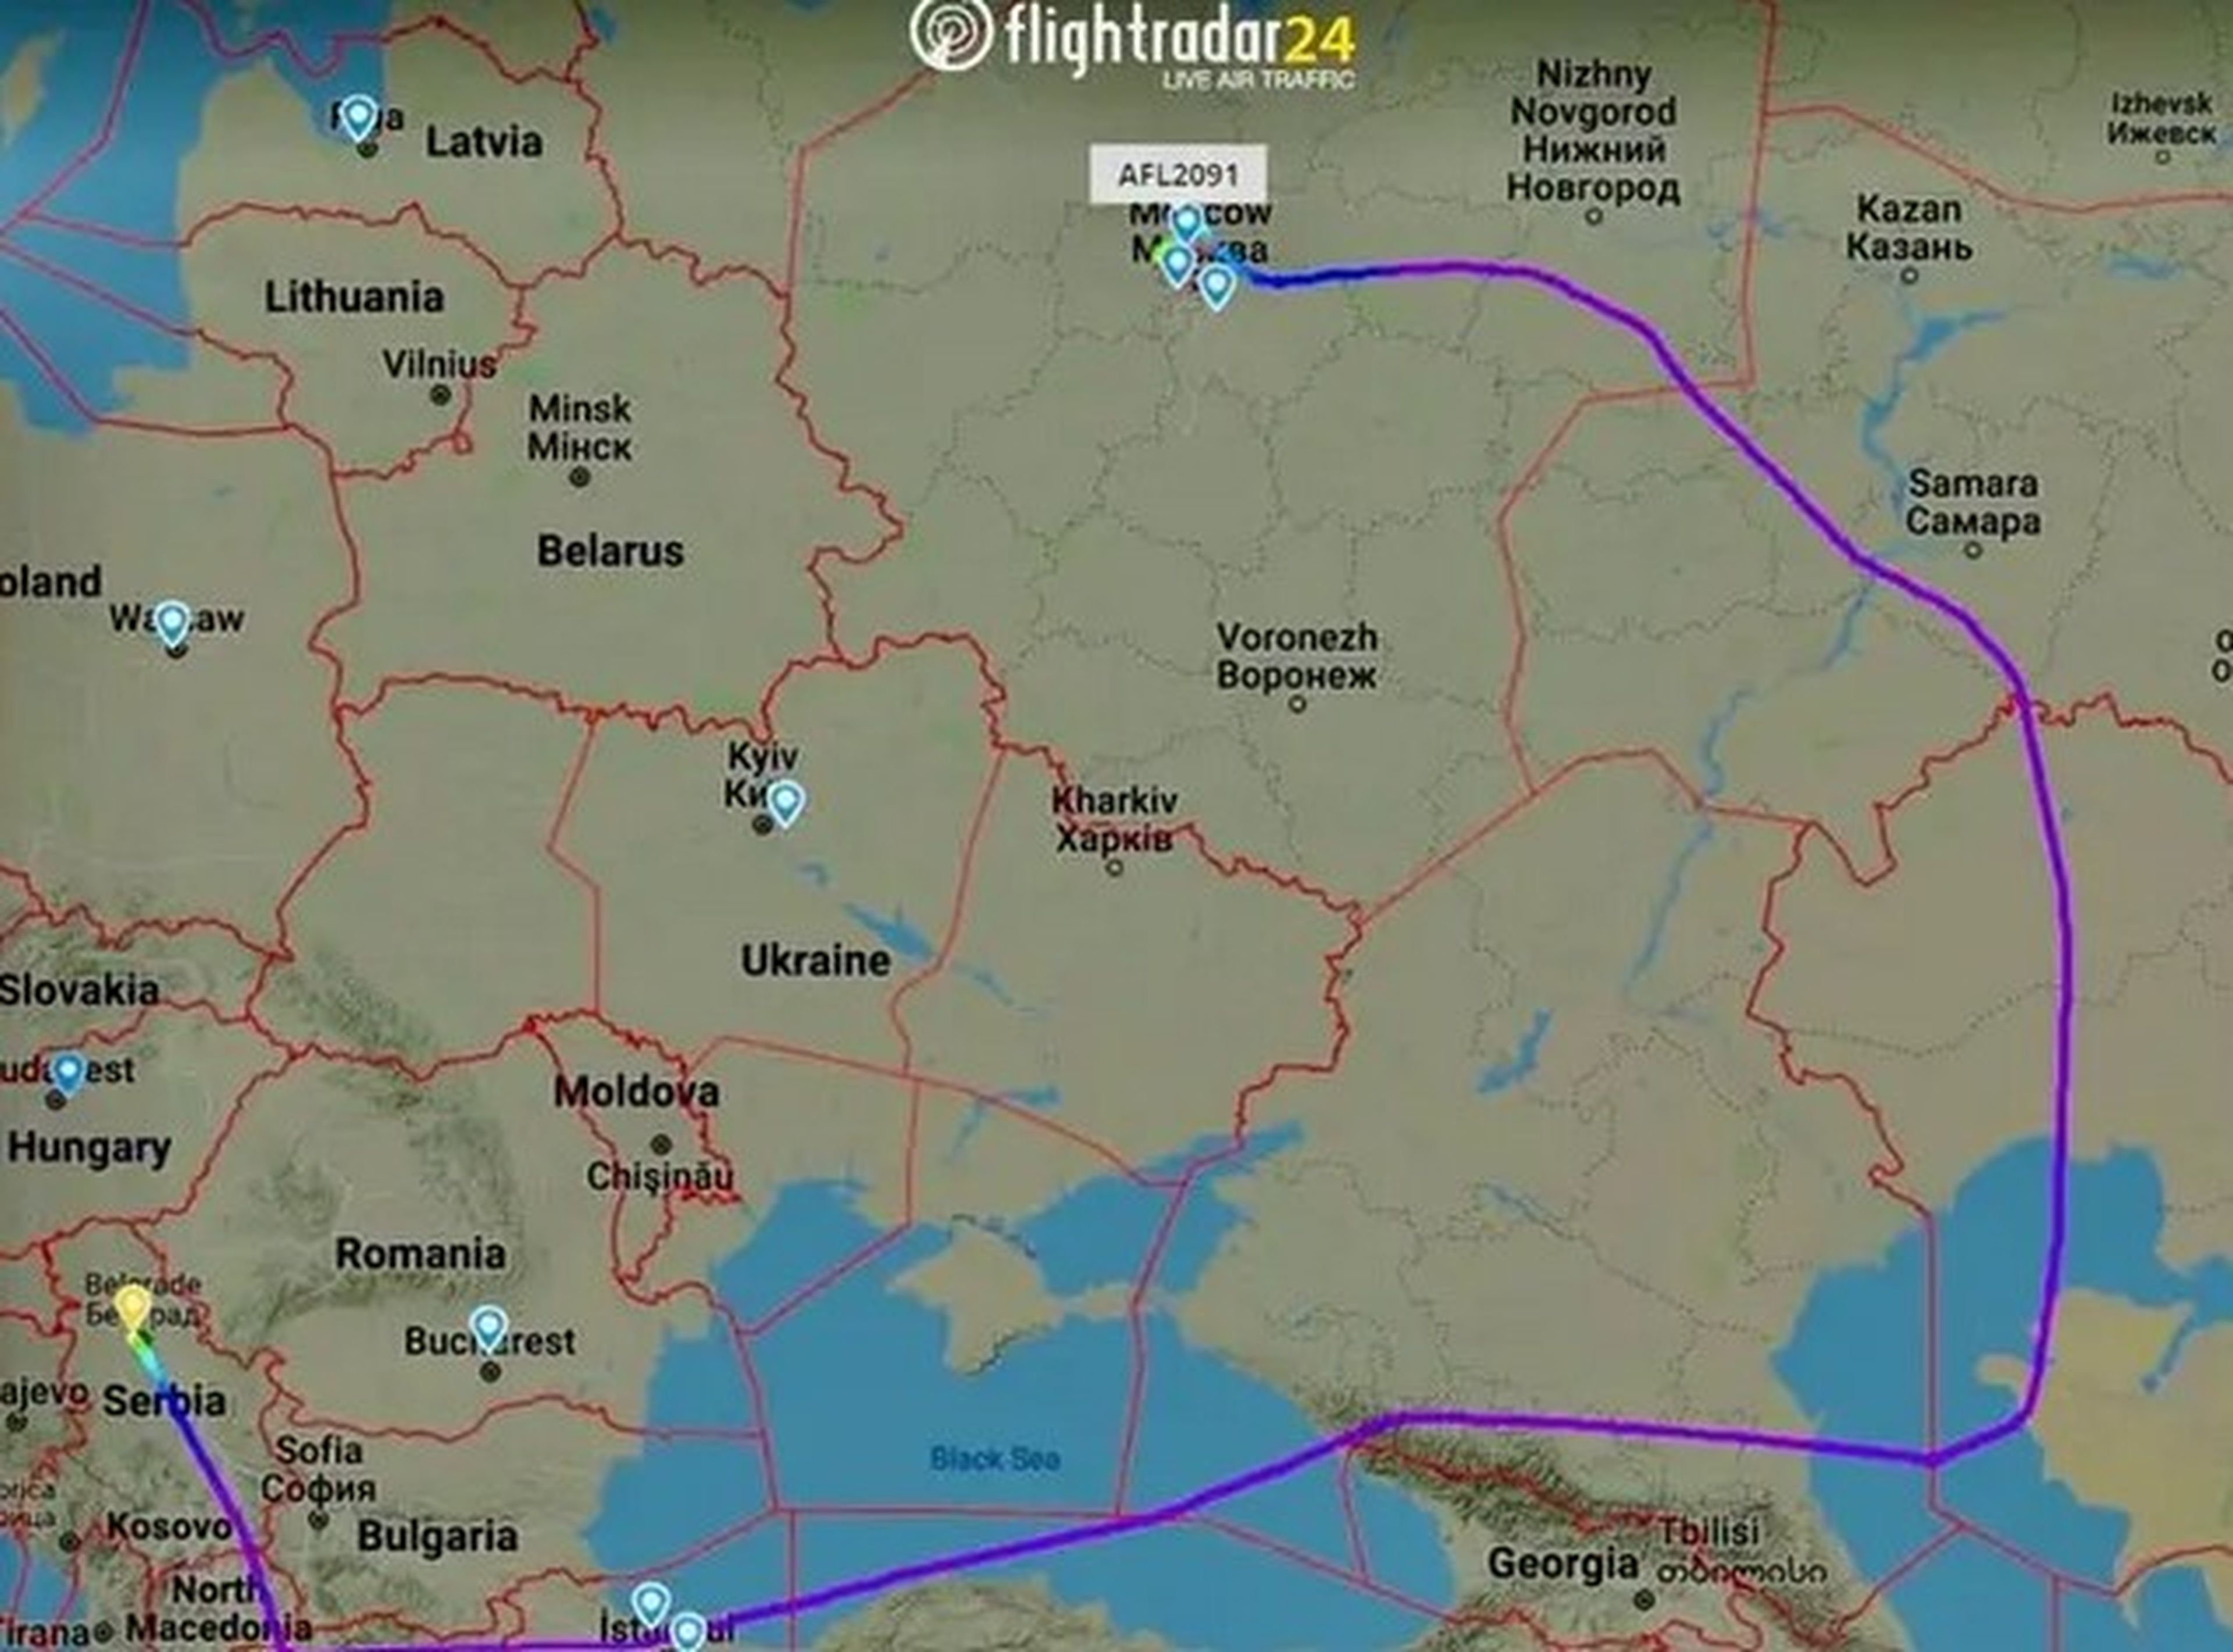 Ruta de Aeroflot desde Belgrado (Serbia) a Moscú (Rusia).